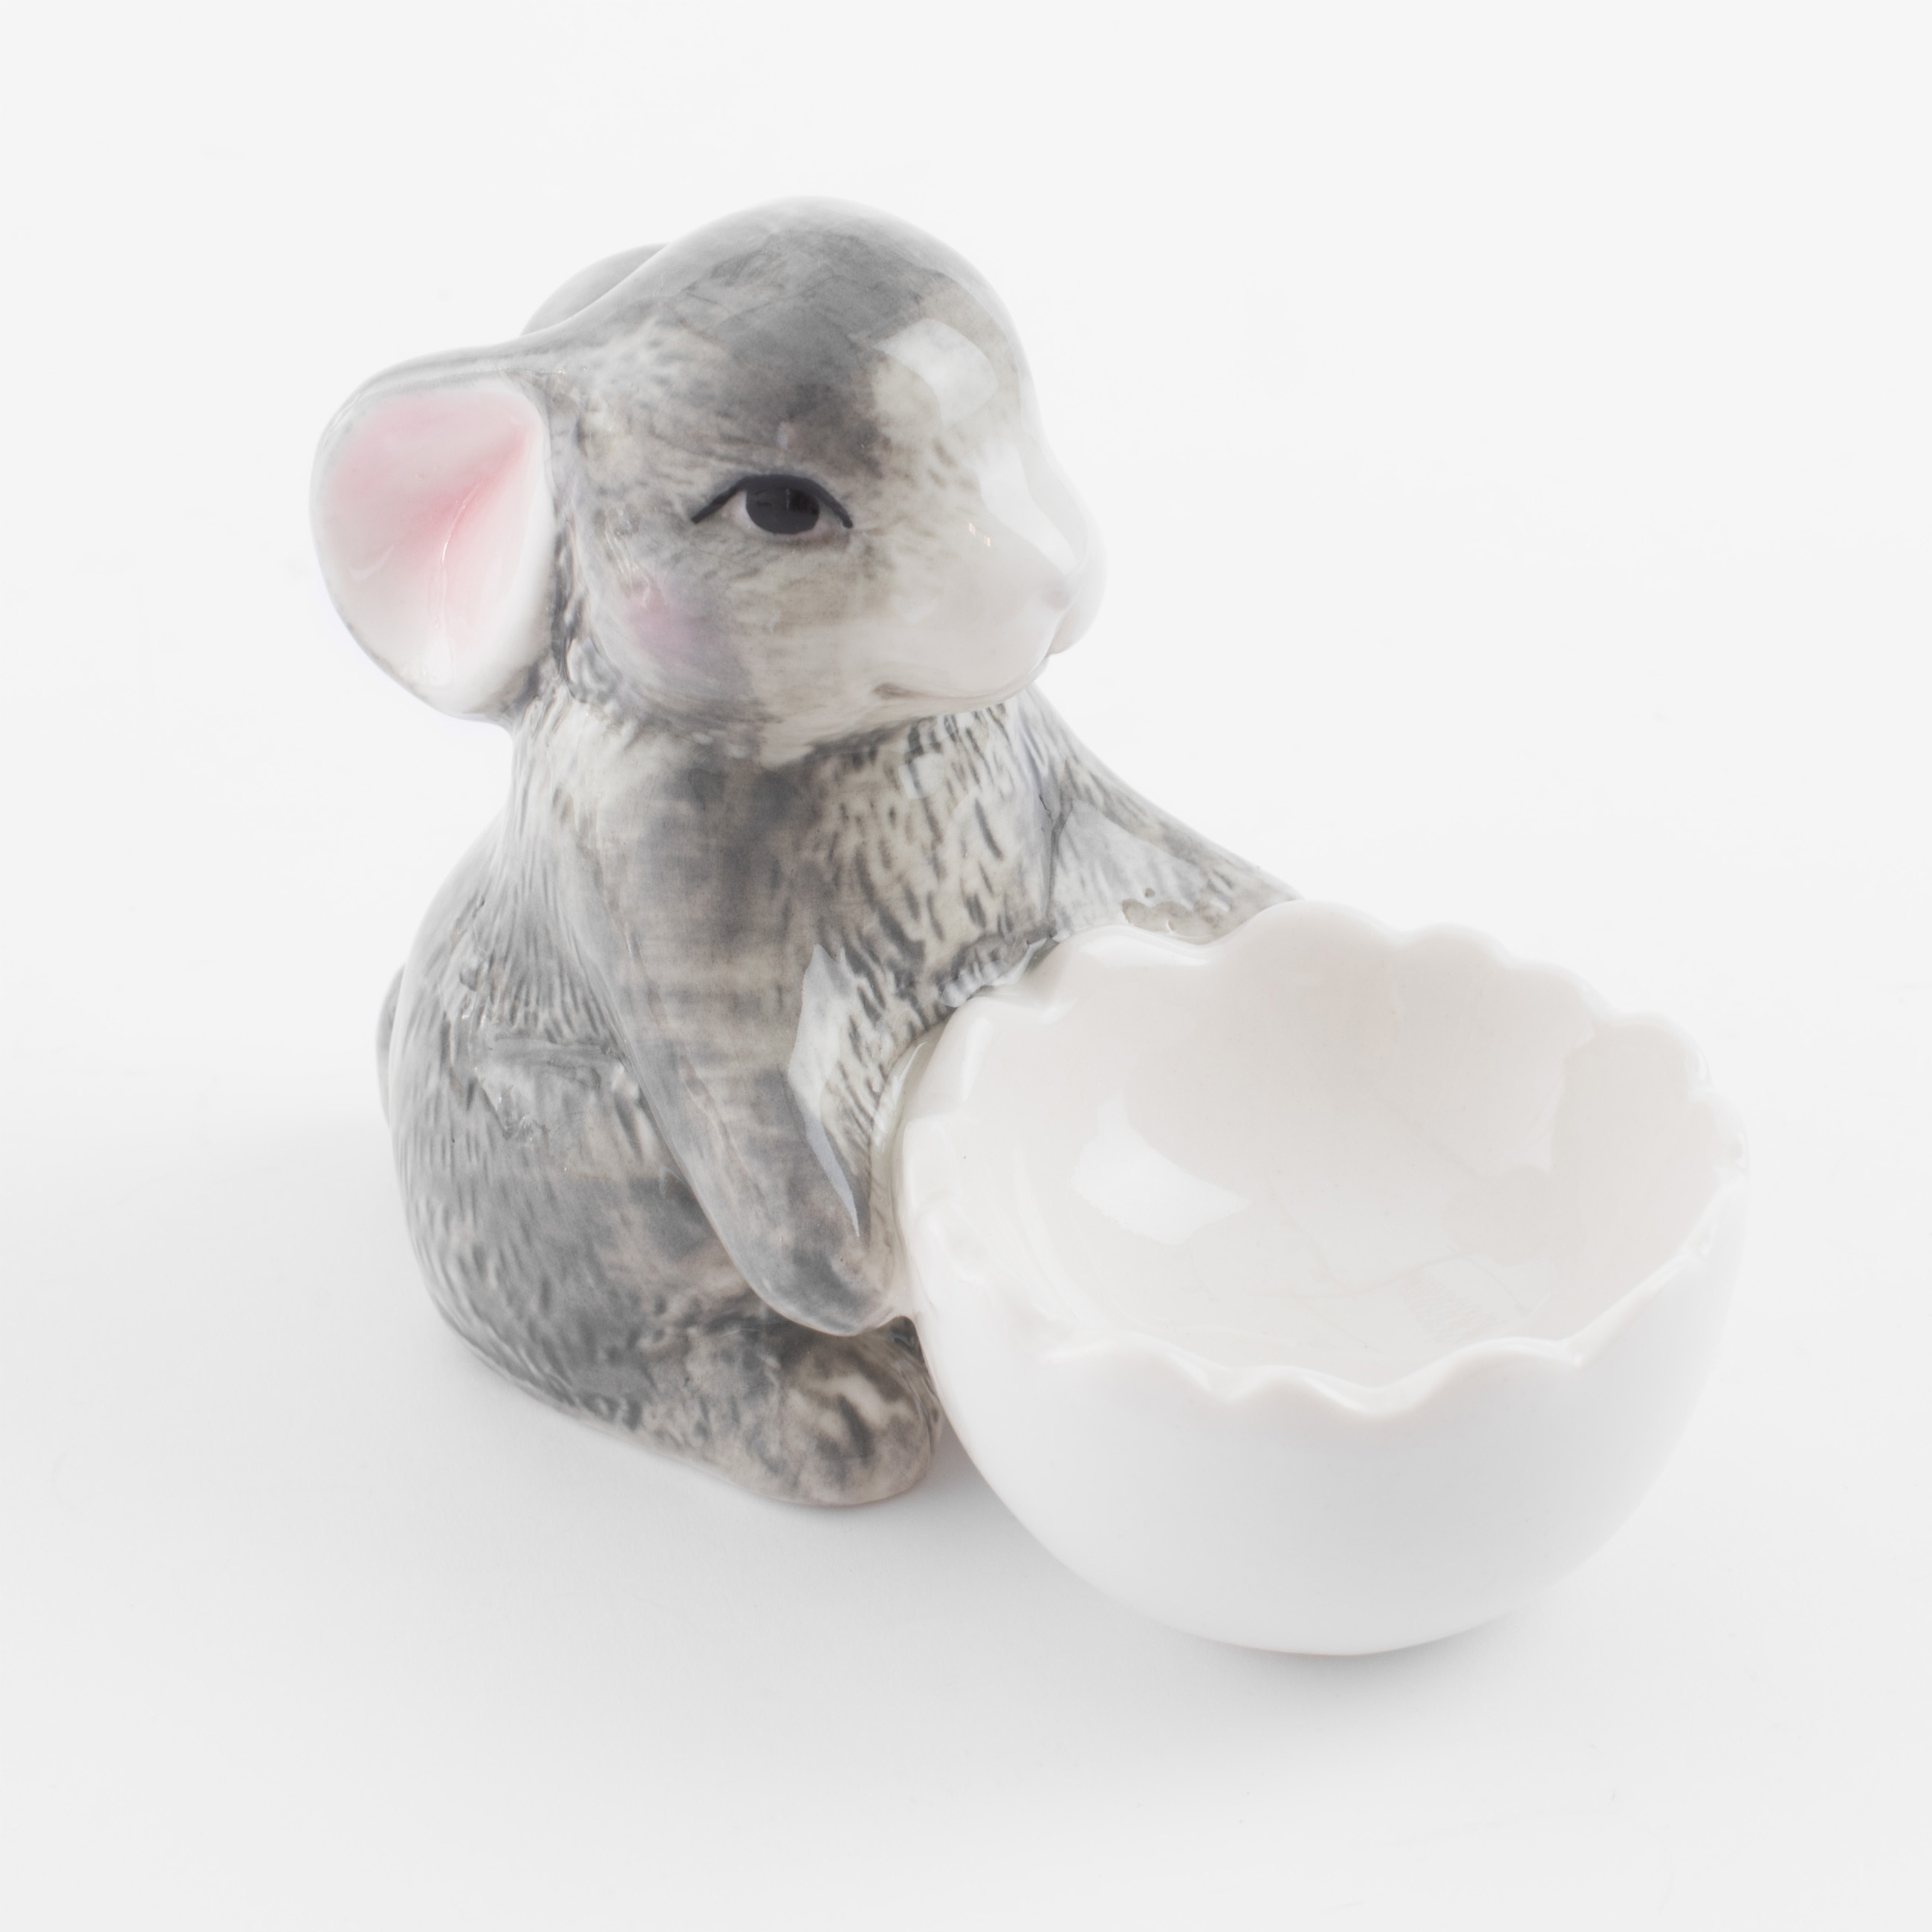 Подставка для яйца, 11 см, фарфор P, бело-серая, Кролик со скорлупой, Pure Easter изображение № 3